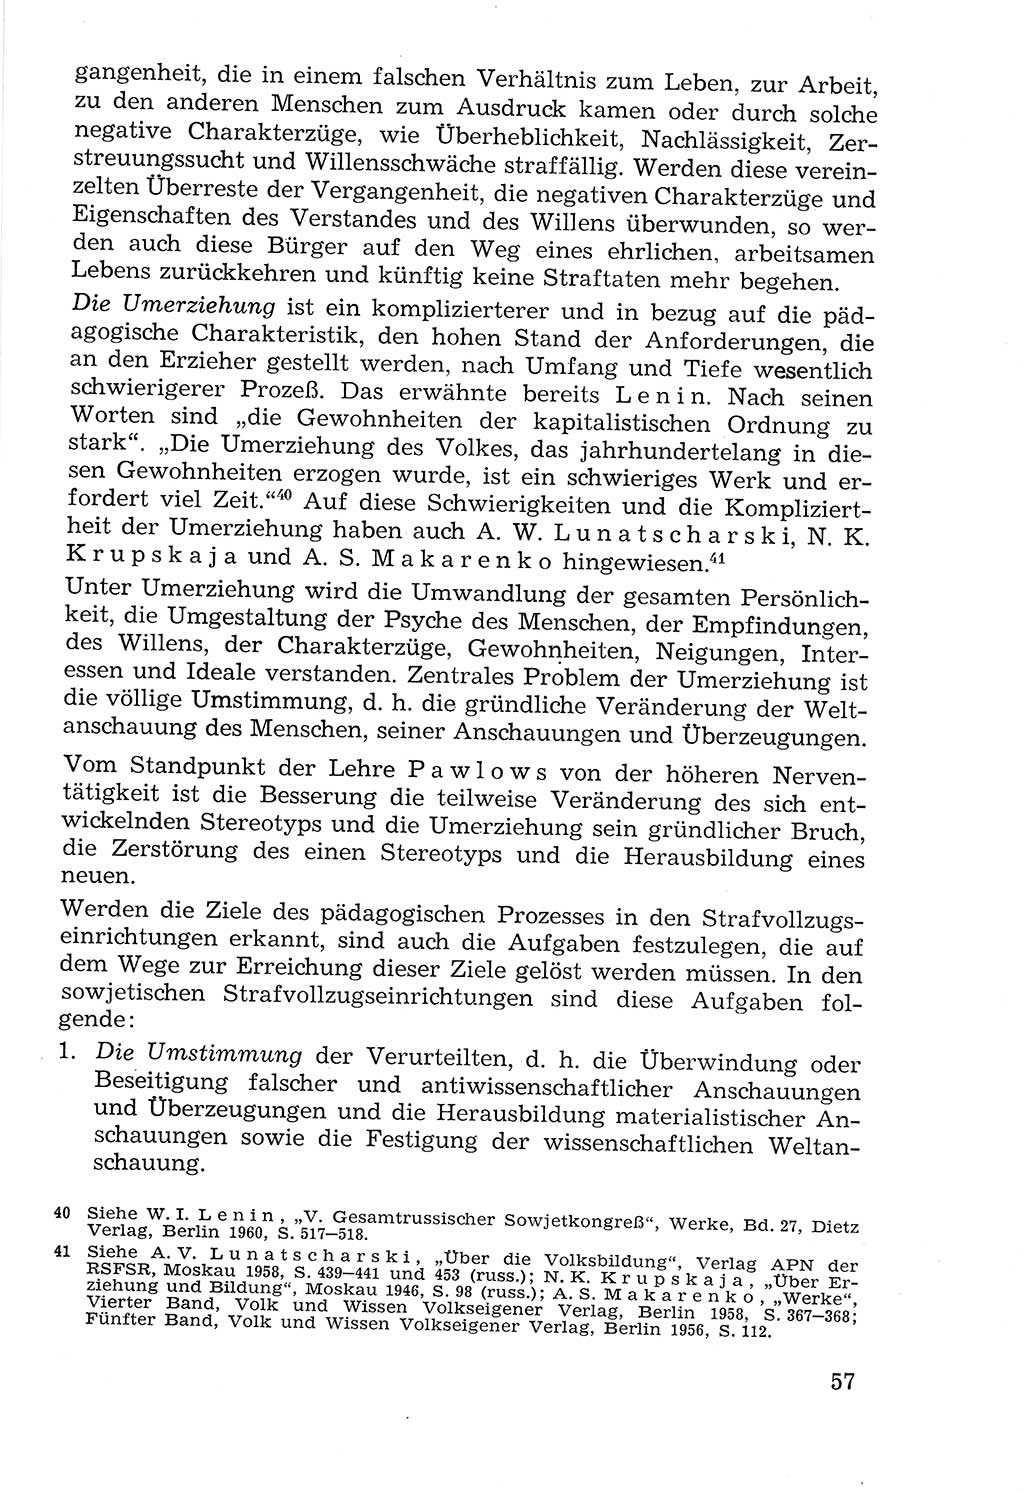 Lehrbuch der Strafvollzugspädagogik [Deutsche Demokratische Republik (DDR)] 1969, Seite 57 (Lb. SV-Pd. DDR 1969, S. 57)